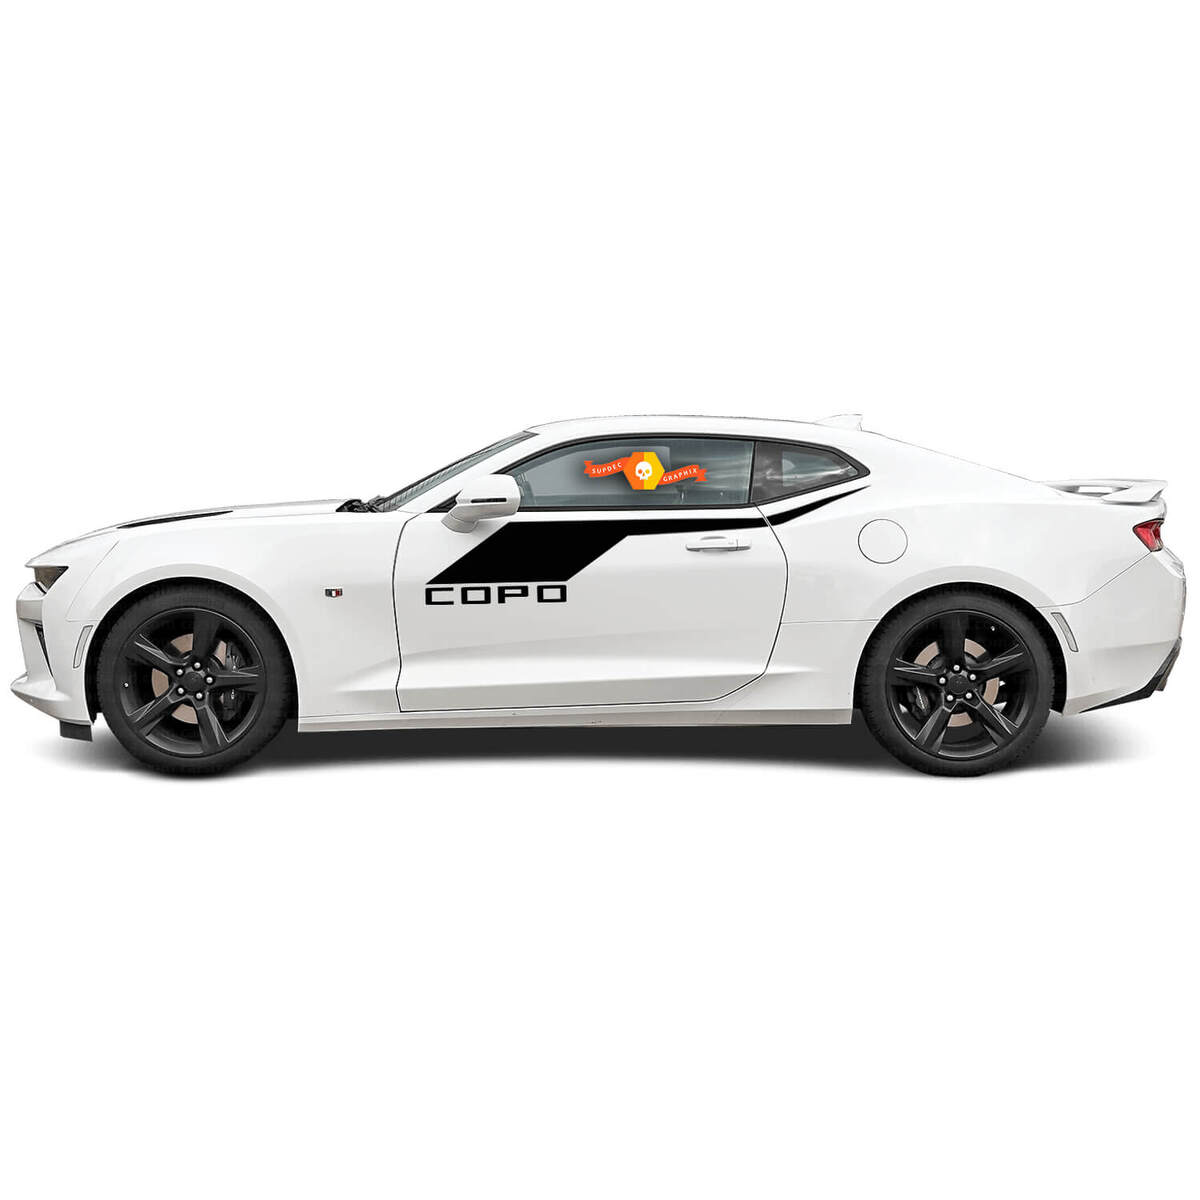 Chevrolet Camaro 2016-2018 Accento laterale in stile COPO